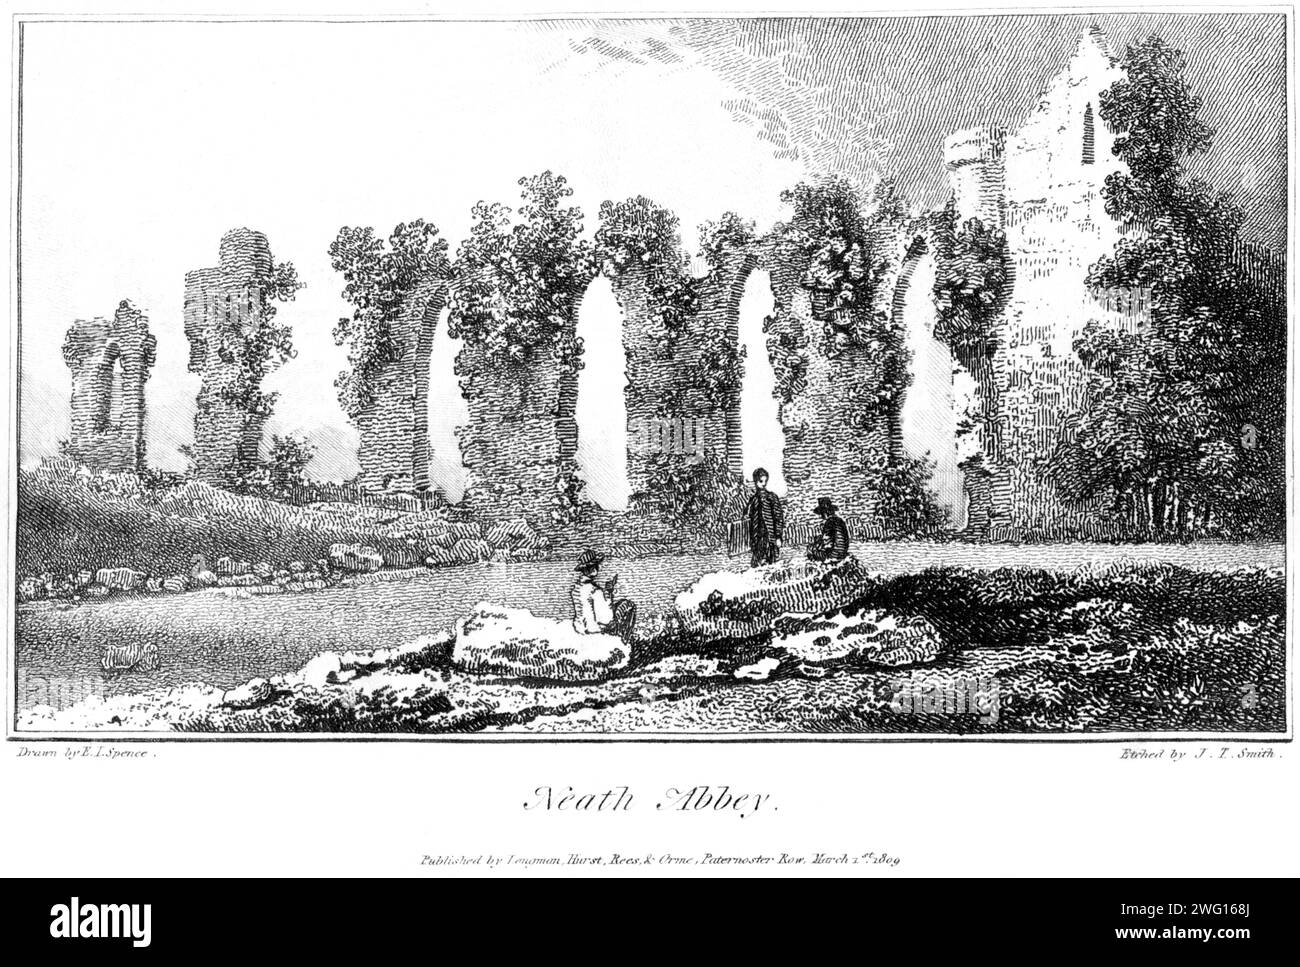 Gravure de Neath Abbey, Galles du Sud Royaume-Uni numérisée à haute résolution à partir d'un livre imprimé en 1809. Cette image est considérée comme libre de tout droit d'auteur. Banque D'Images